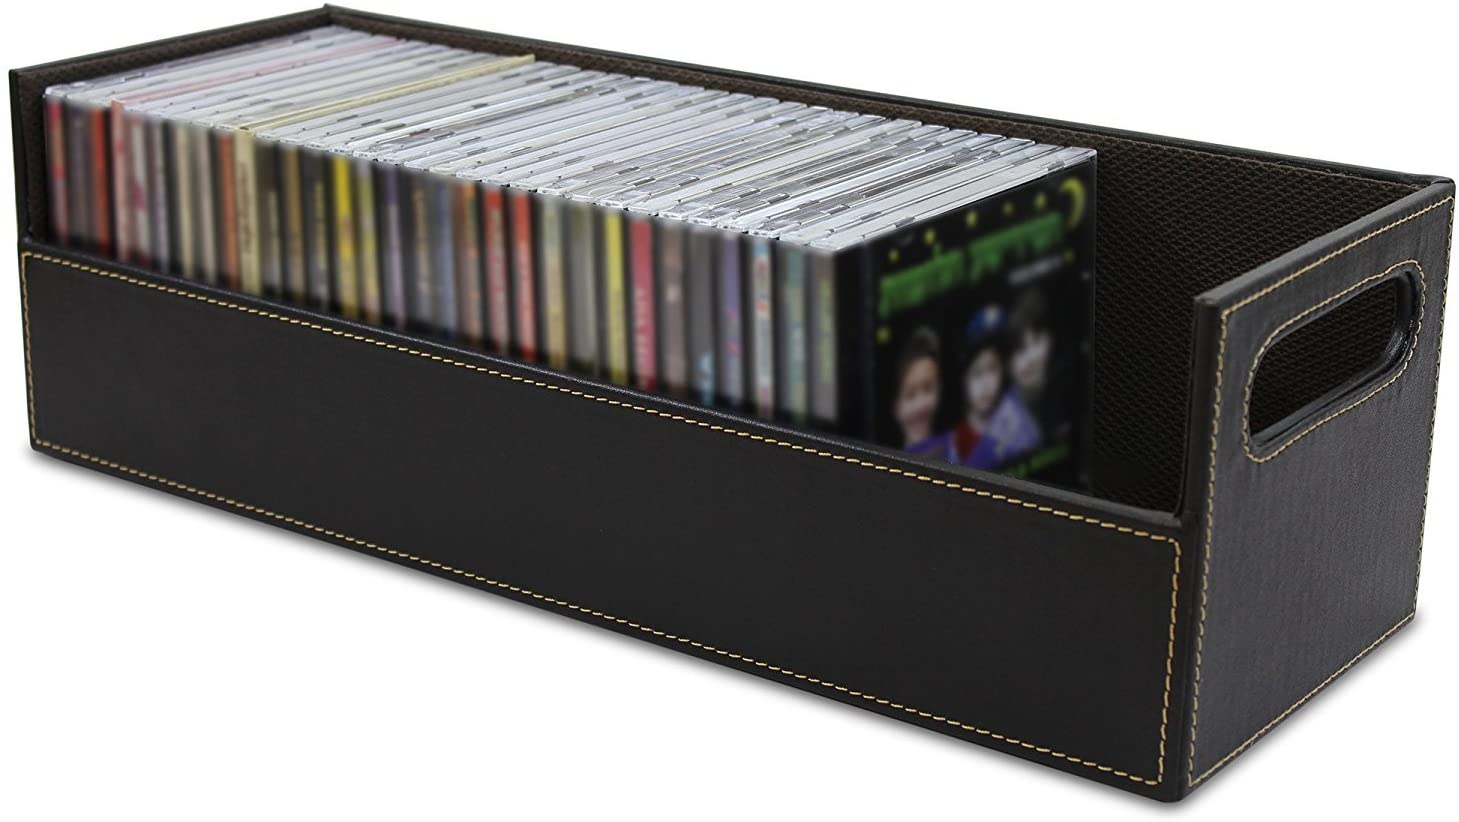 Zachtmoedigheid Benodigdheden Alvast Set of 2- Stock Your Home CD Storage Box with Powerful Magnetic Openin